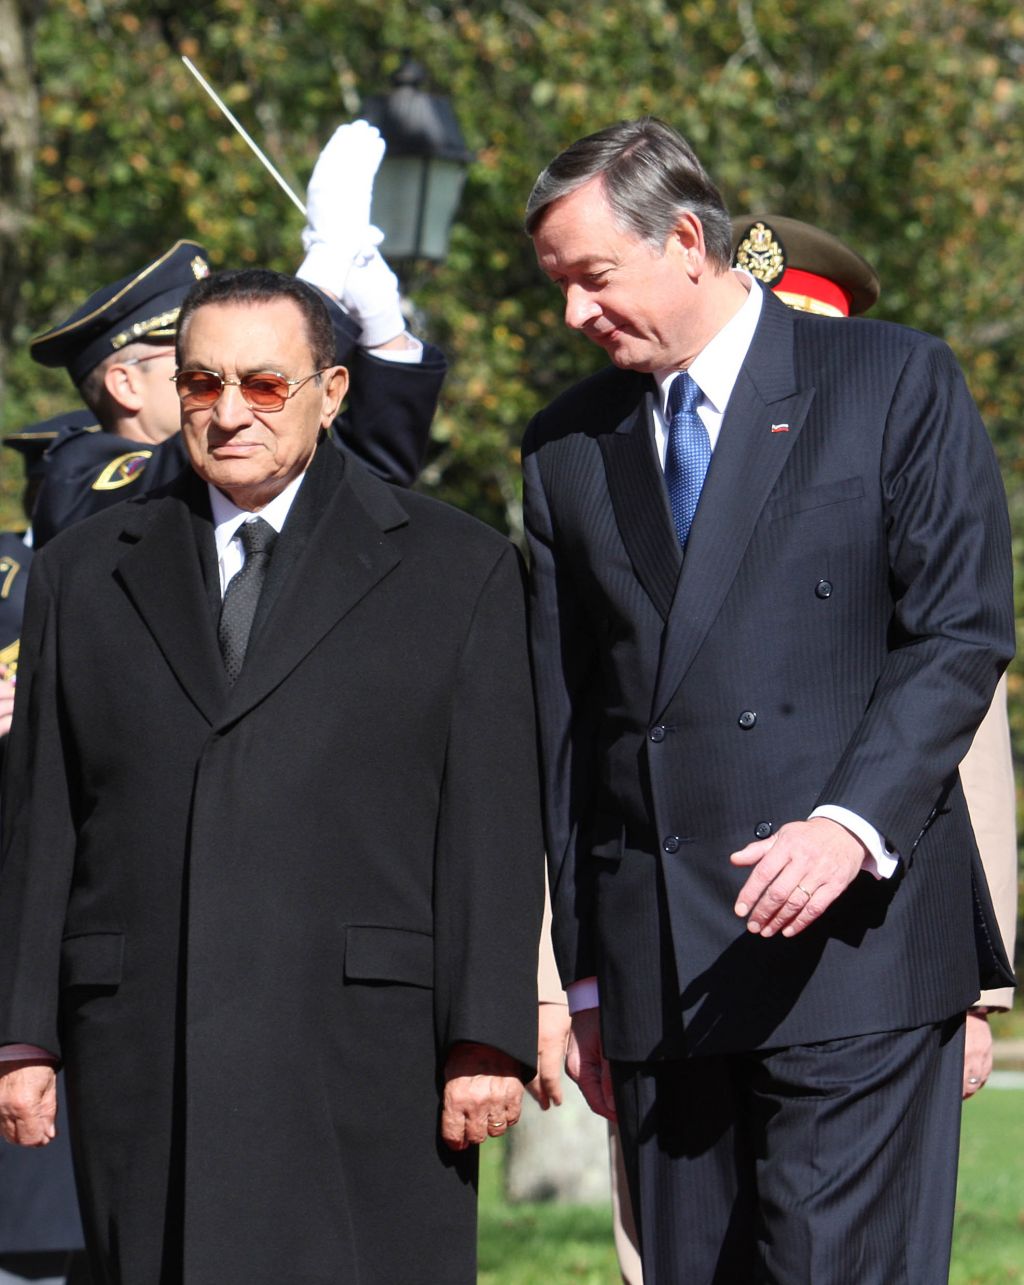 FOTO: Türk gosti egiptovskega predsednika Mubaraka